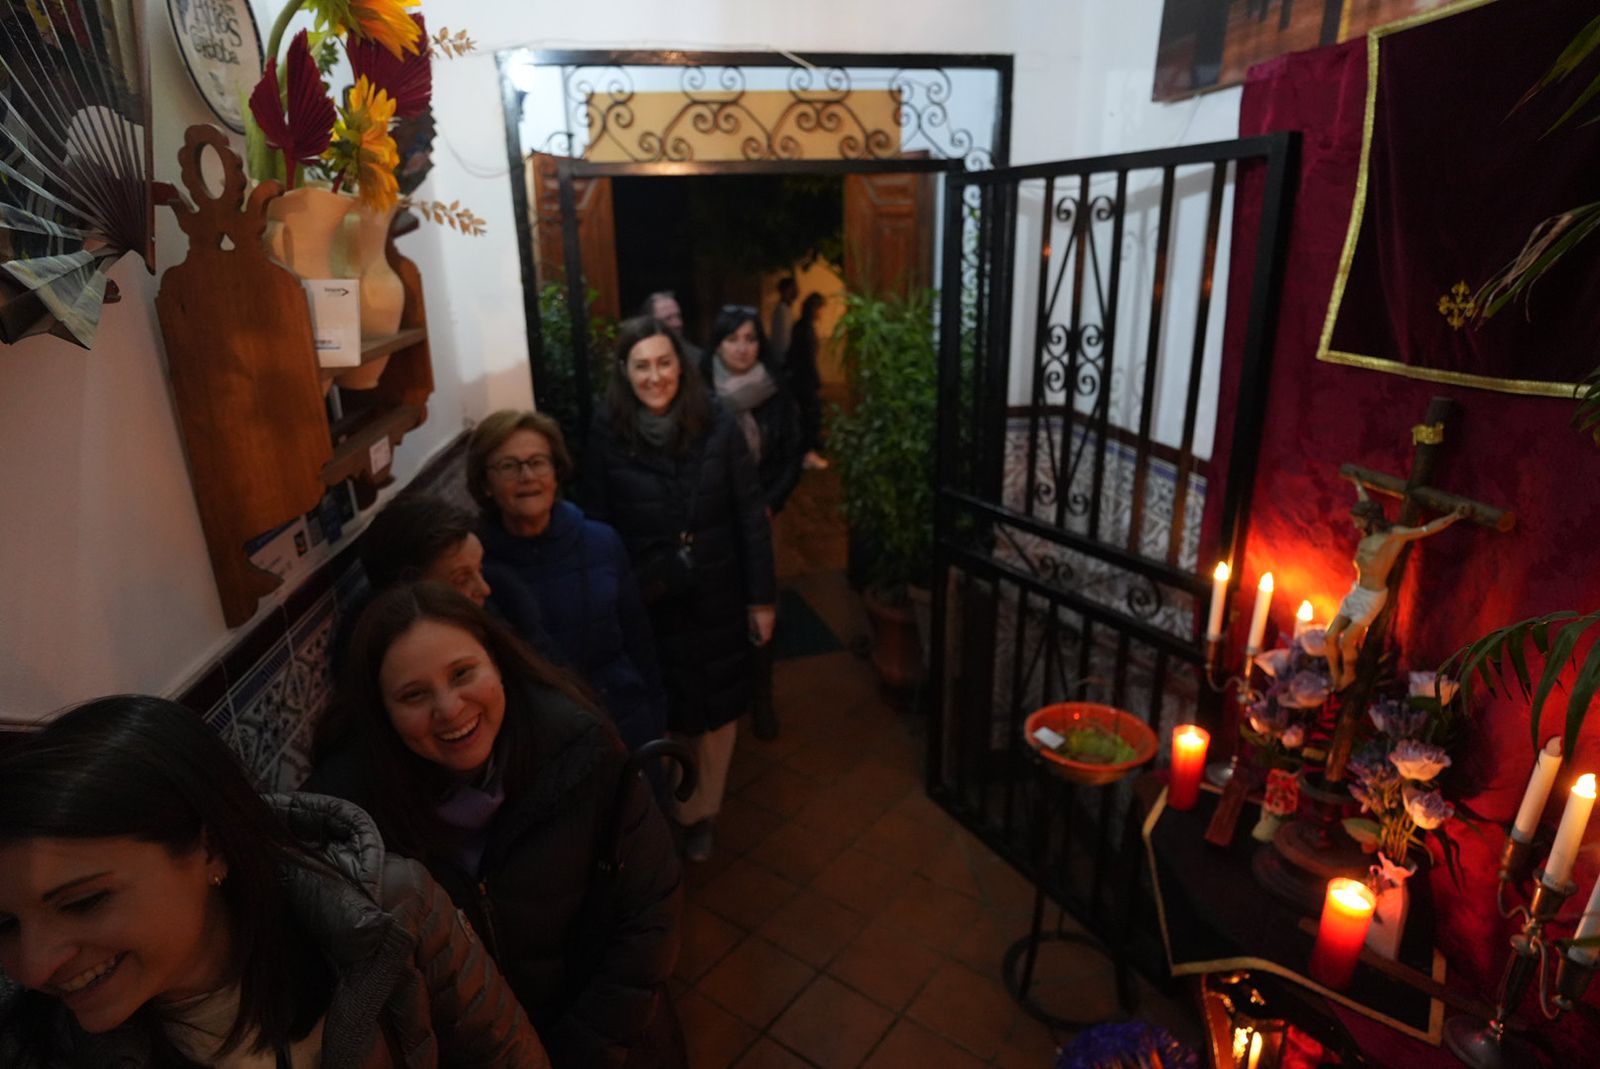 Diez patios de Córdoba abren sus puertas en este Jueves Santo